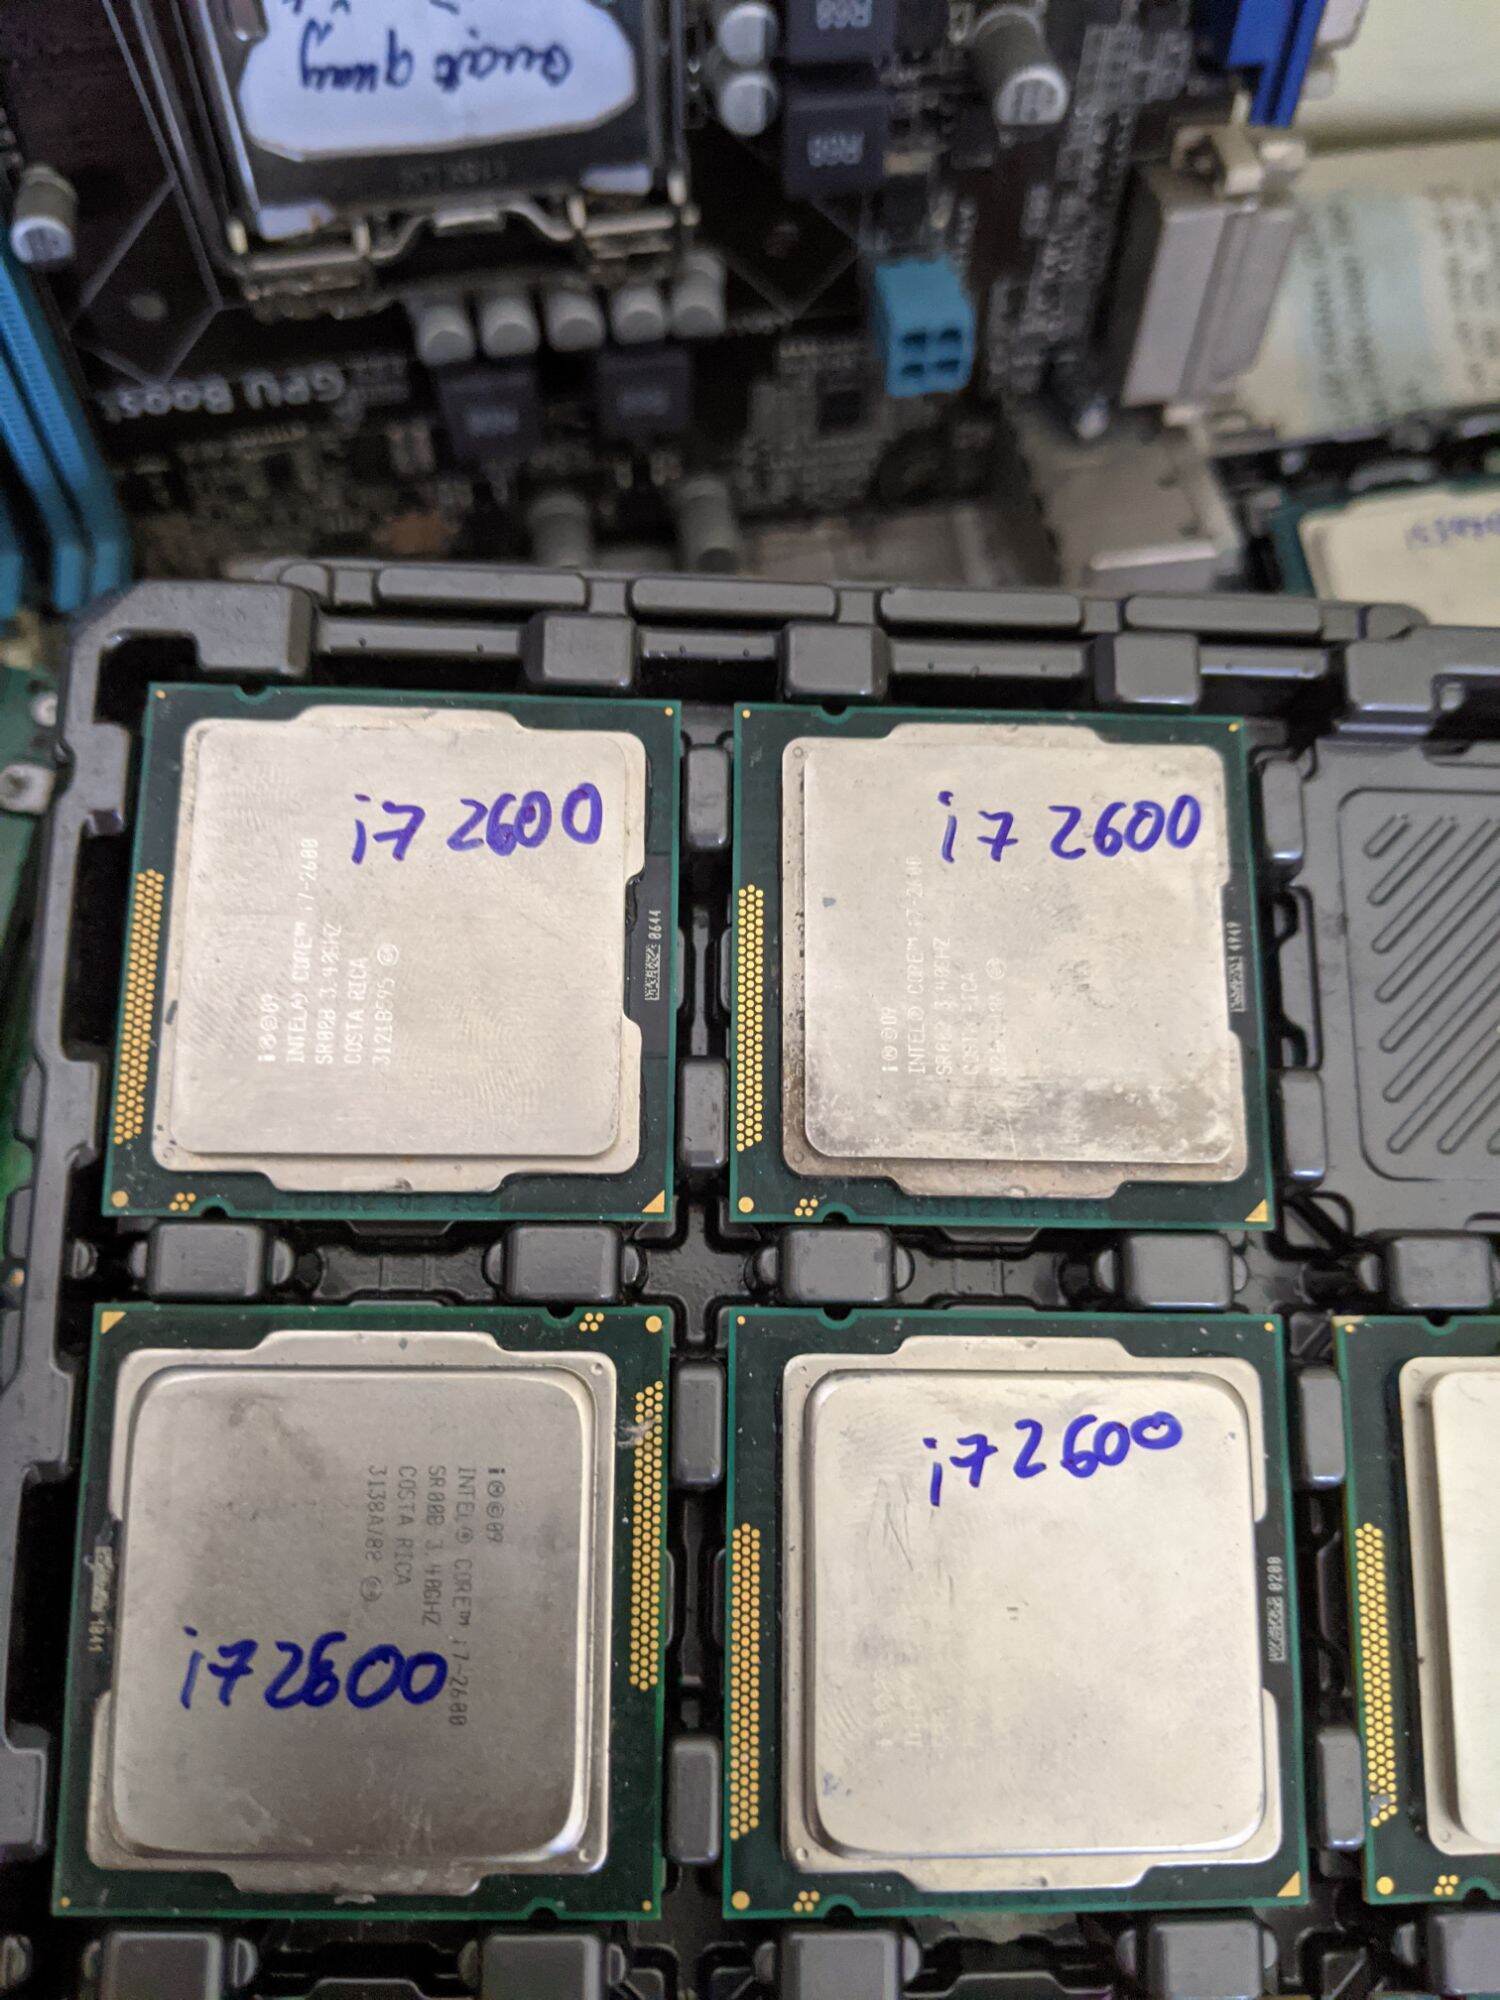 Chip i7 2600 dùng cho main sk1155 như h61, b75, z77, h67...